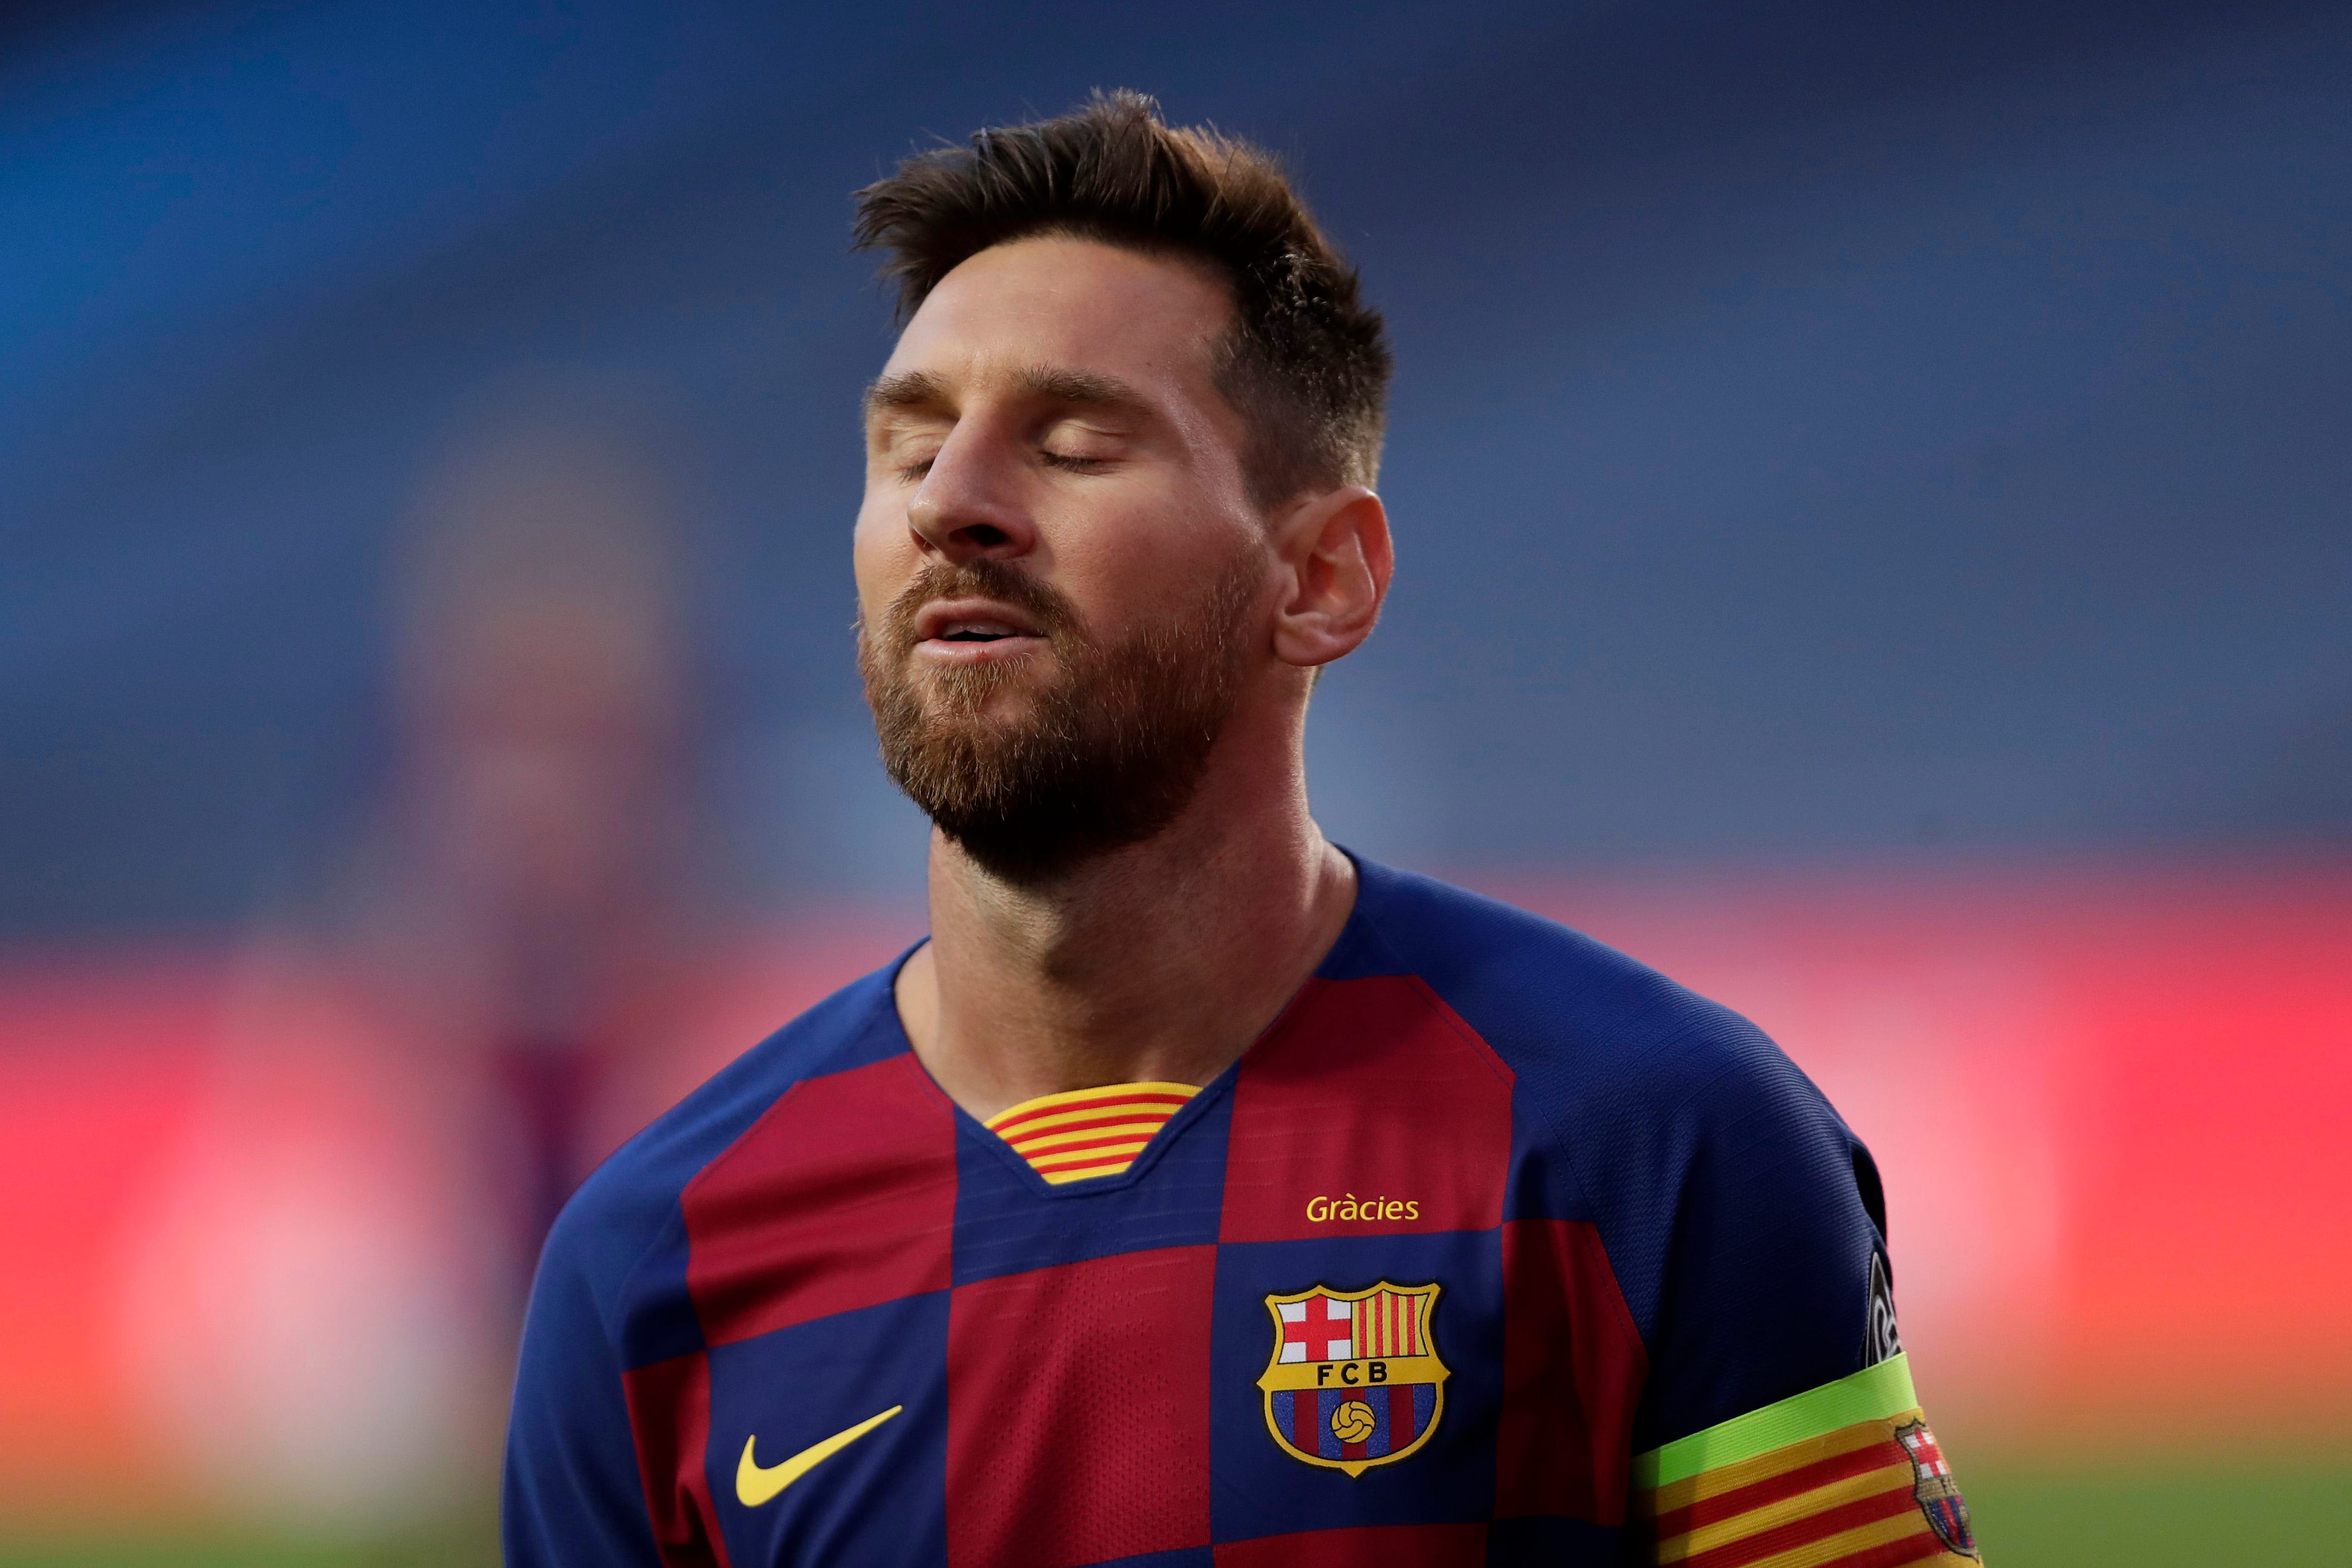 Hình nền bóng đá Messi là lựa chọn hoàn hảo để tối ưu hóa trang trí màn hình điện thoại hay máy tính của bạn. Khám phá ngay hình nền chất lượng cao với chân dung siêu sao Lionel Messi và cảm nhận nguồn cảm hứng mãnh liệt sẽ tạo nên trong trái tim bạn.